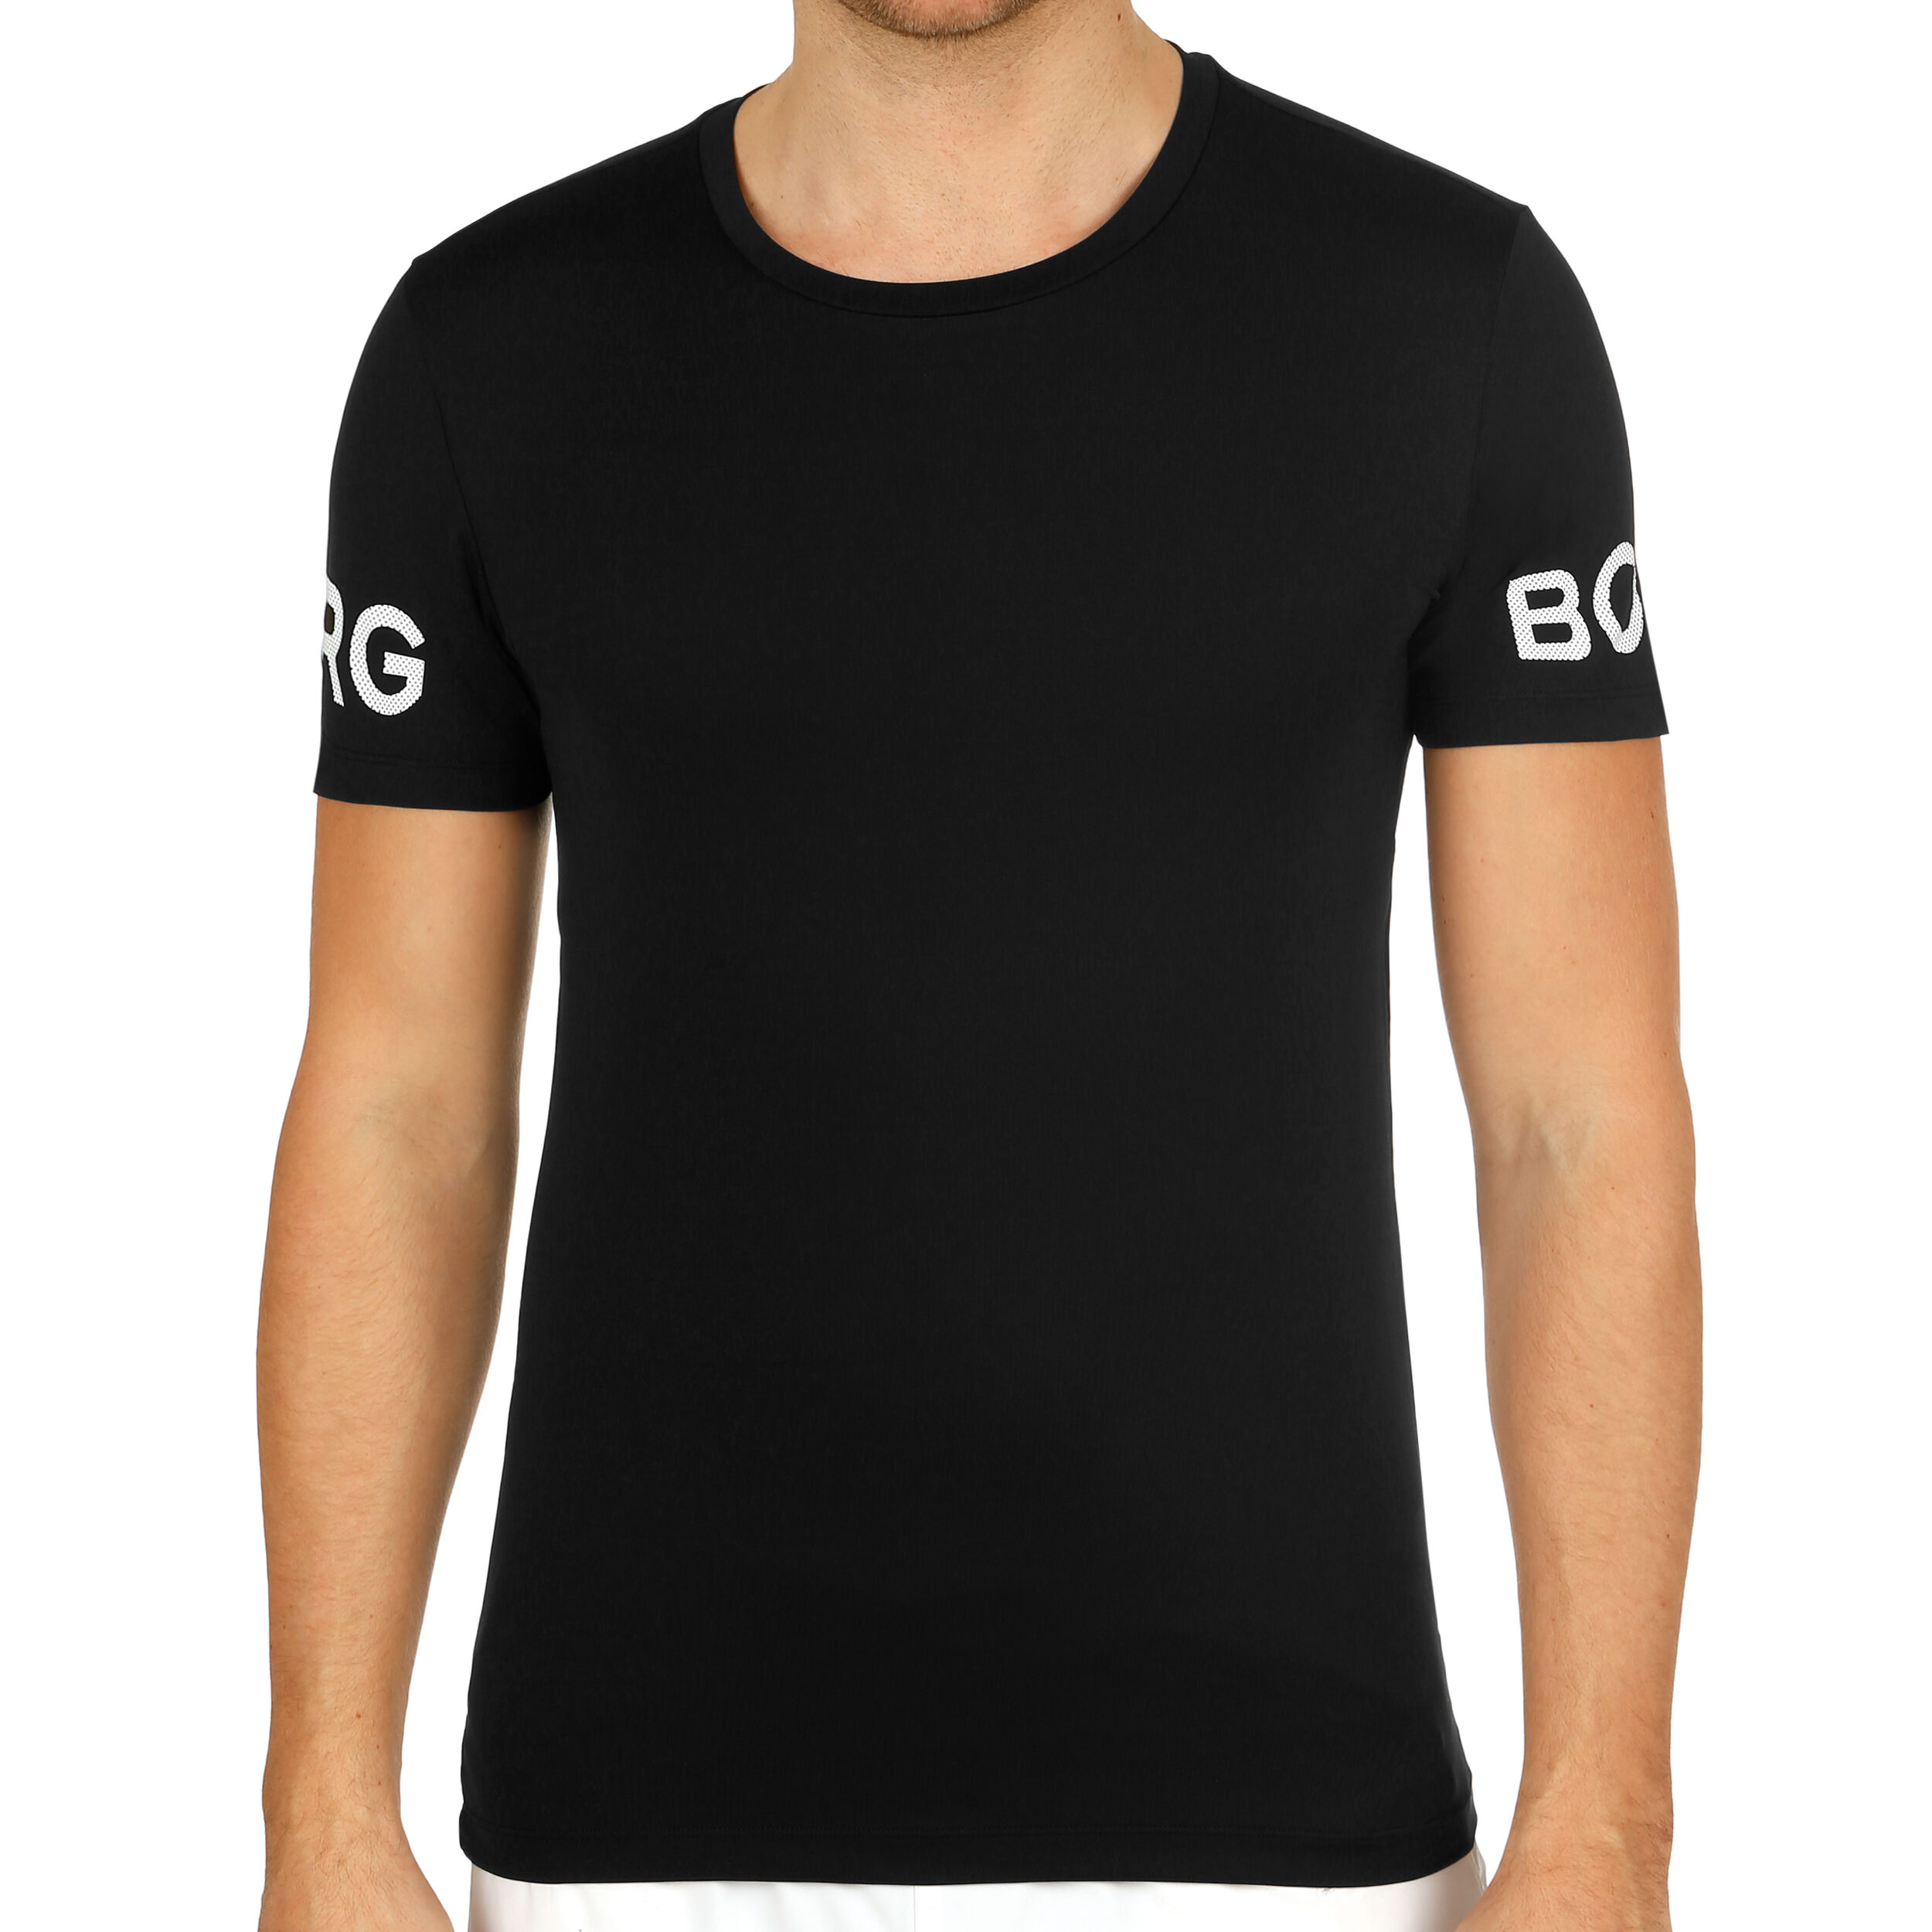 Björn Borg Short Sleeve Tee Shirt Men Herren Sport Freizeit T-Shirt 9999-1140 